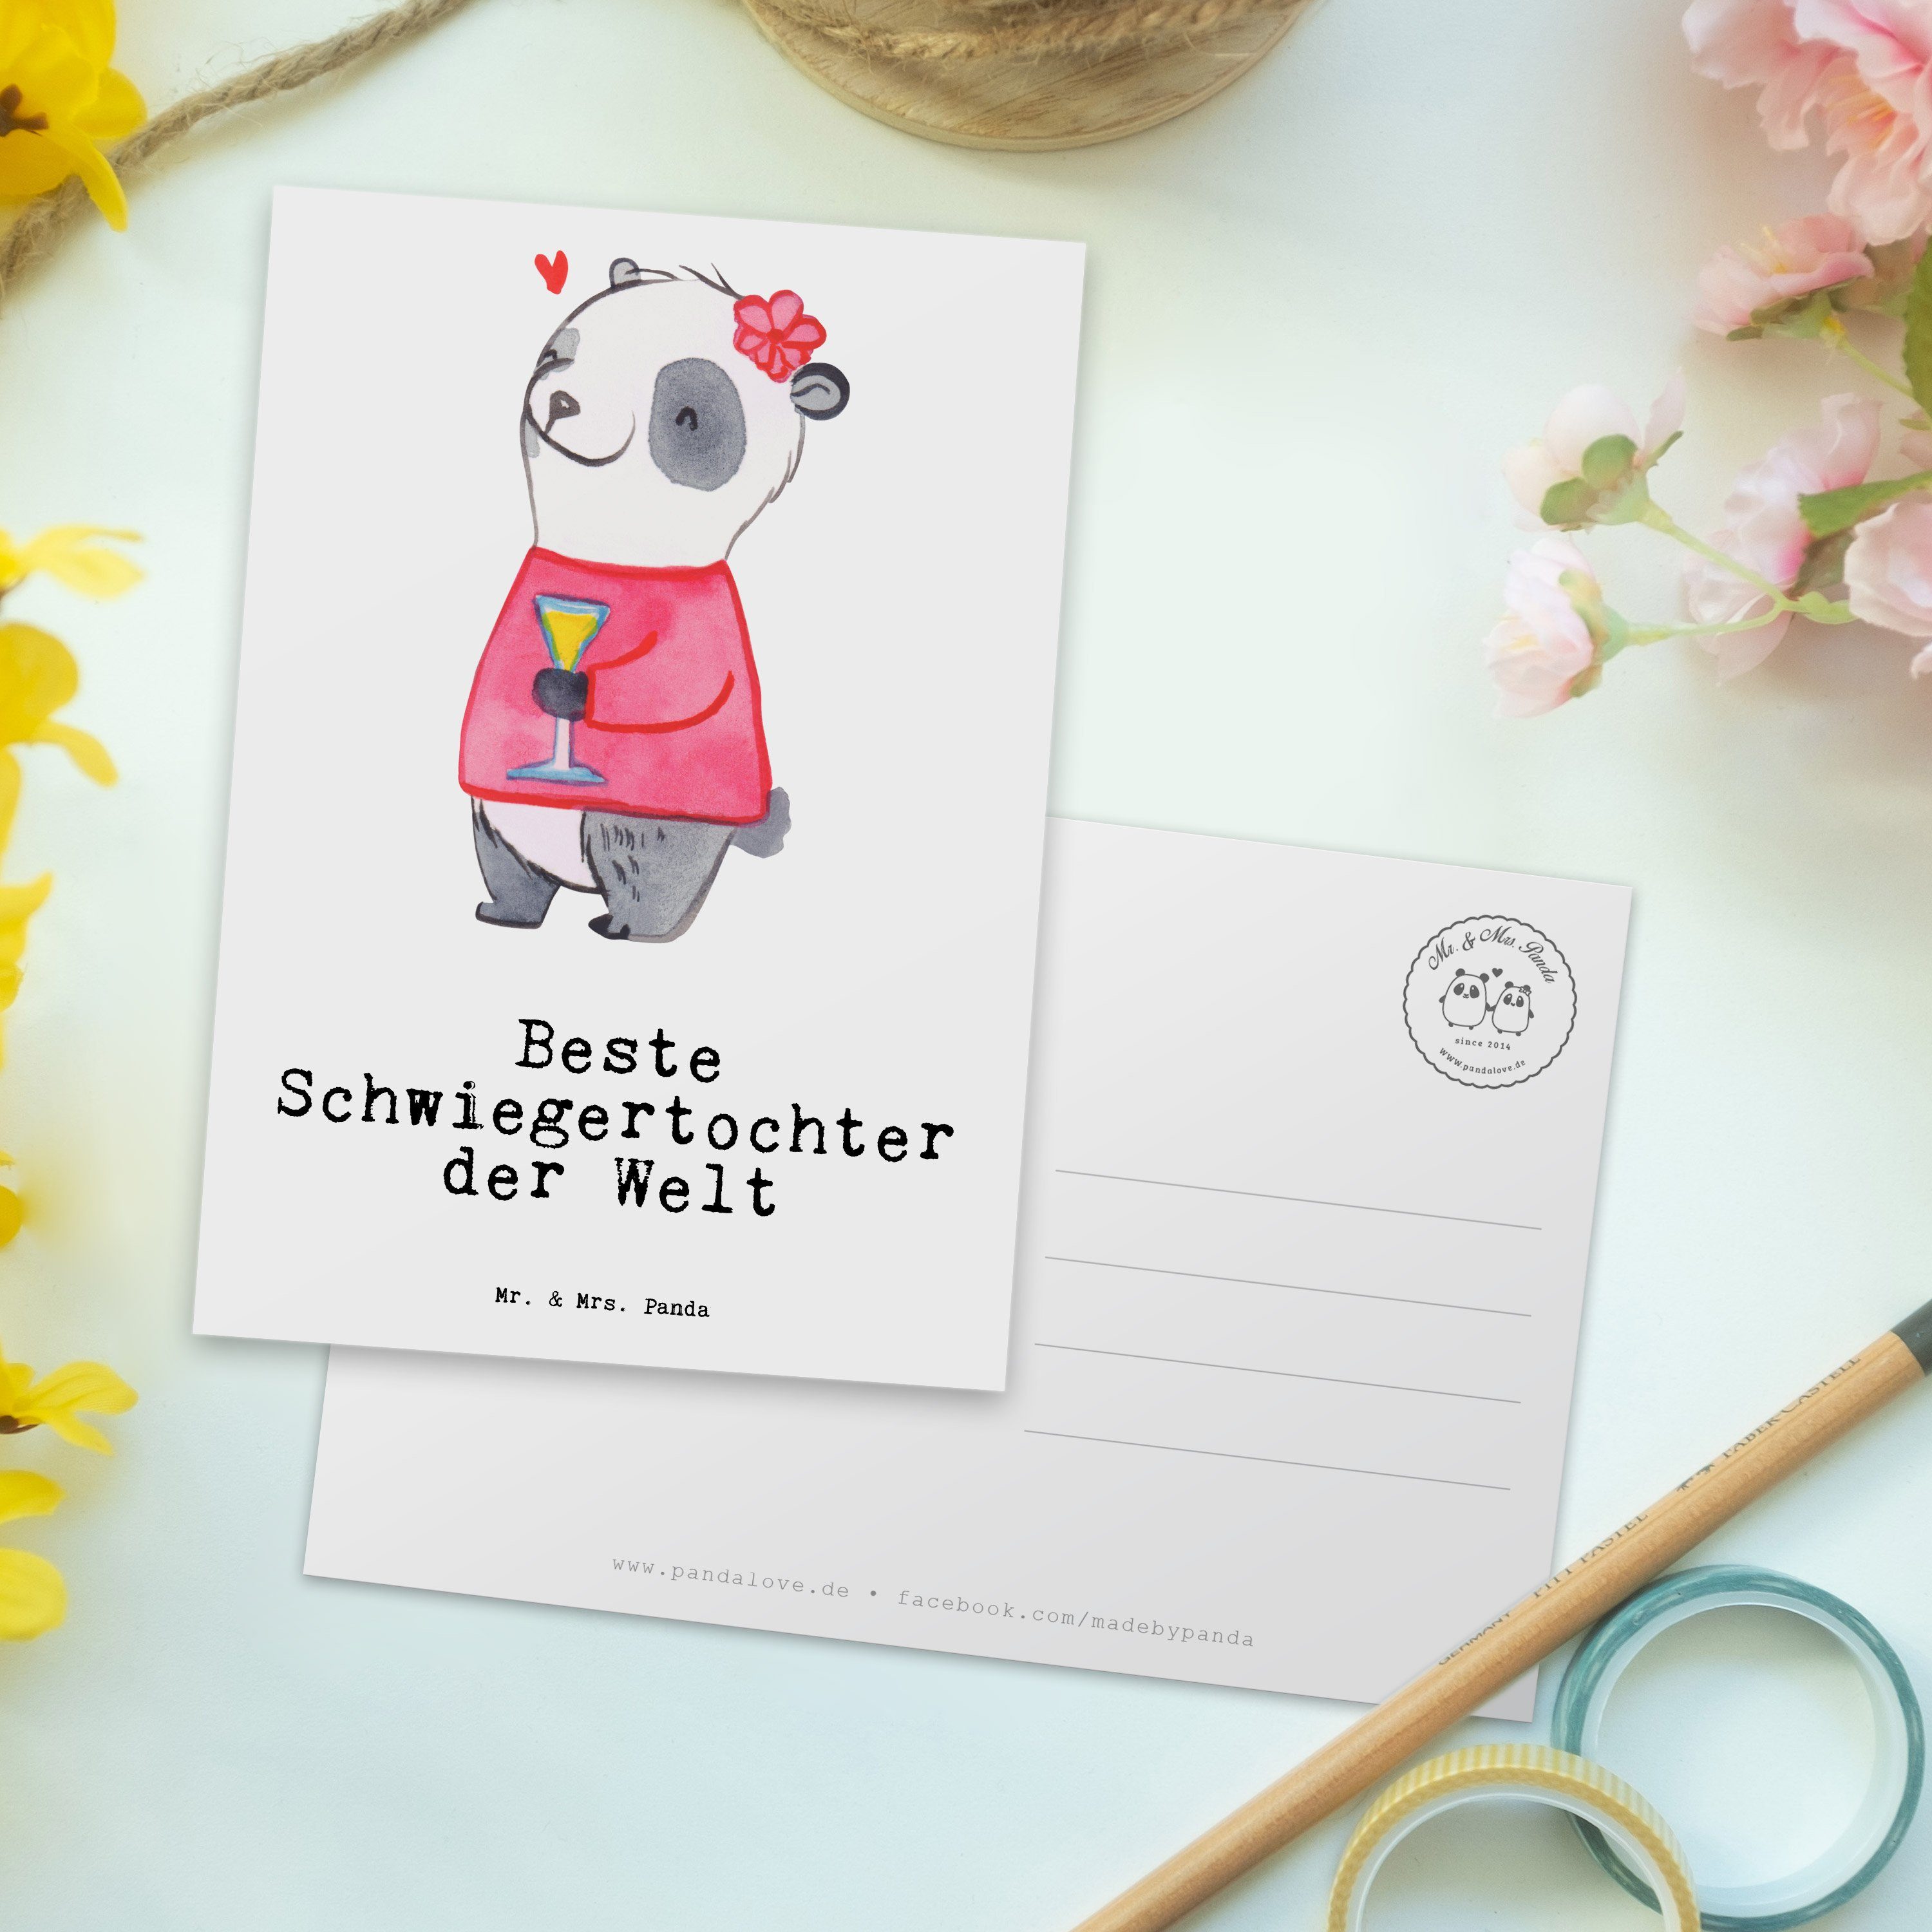 Mr. & Mrs. Beste Weiß Panda Karte, Schen - Panda der Geschenk, Welt Schwiegertochter Postkarte 